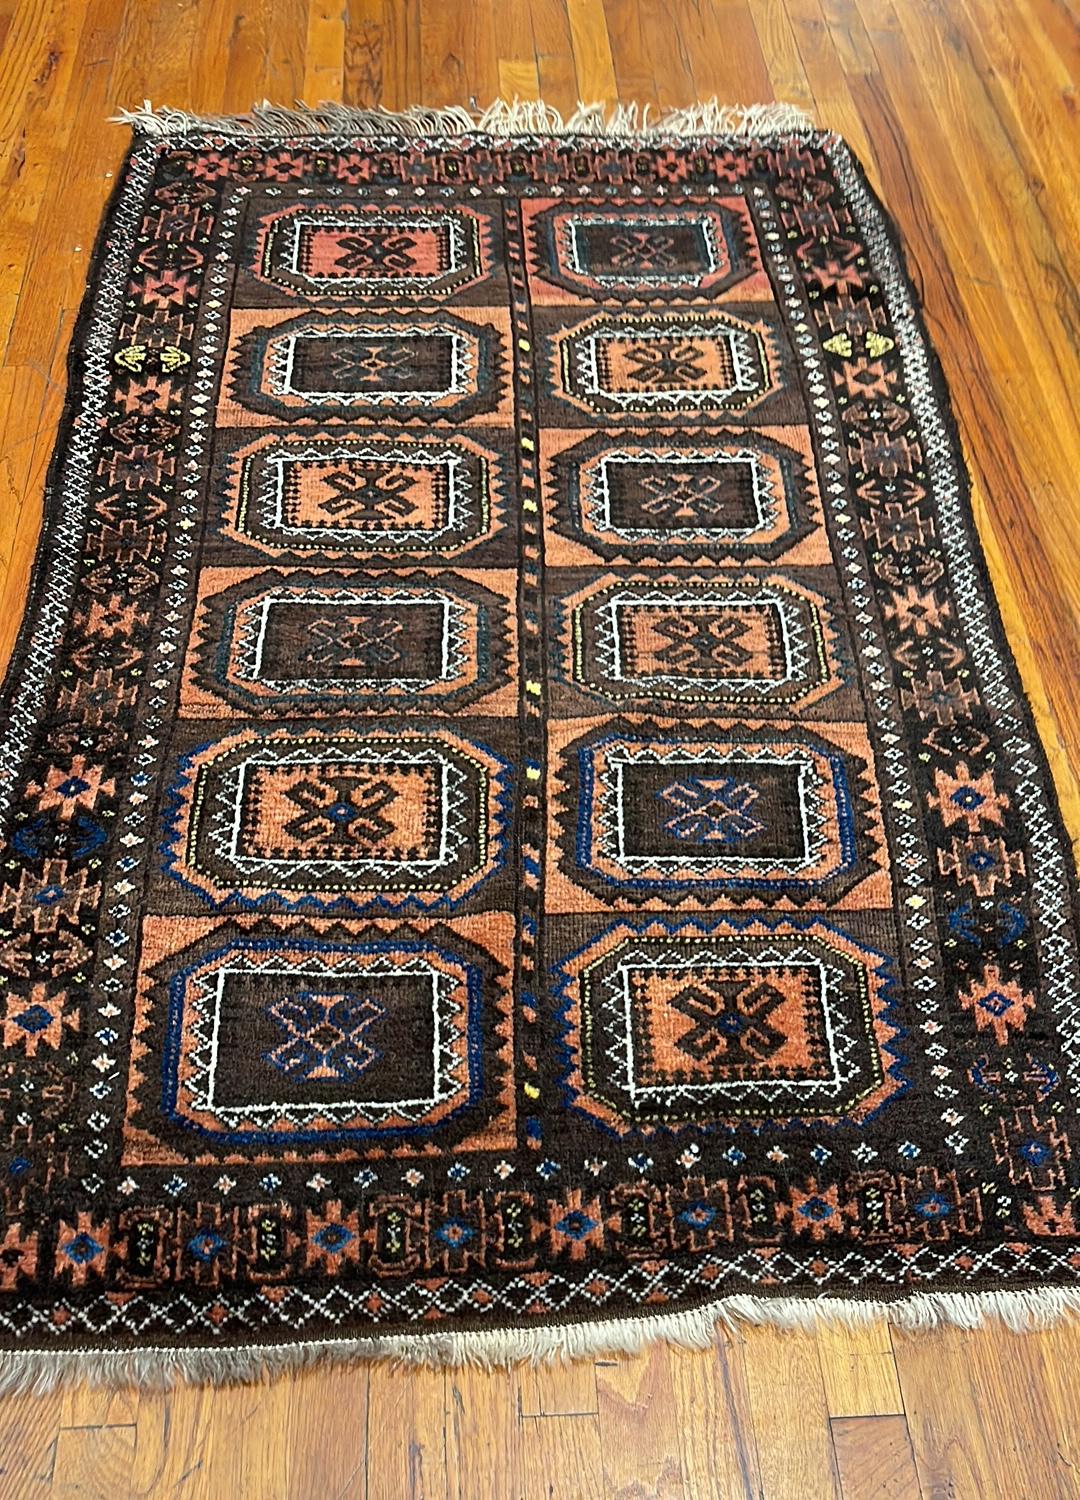 Dieser Teppich ist ein afghanischer Teppich, der von einer Weberei in Afghanistan gewebt wurde. Afghanistan blickt auf eine reiche Geschichte der Teppichknüpfkunst zurück. Das Design in diesem Stück ist ein Tribal-Allover-Muster. Die Farbkombination